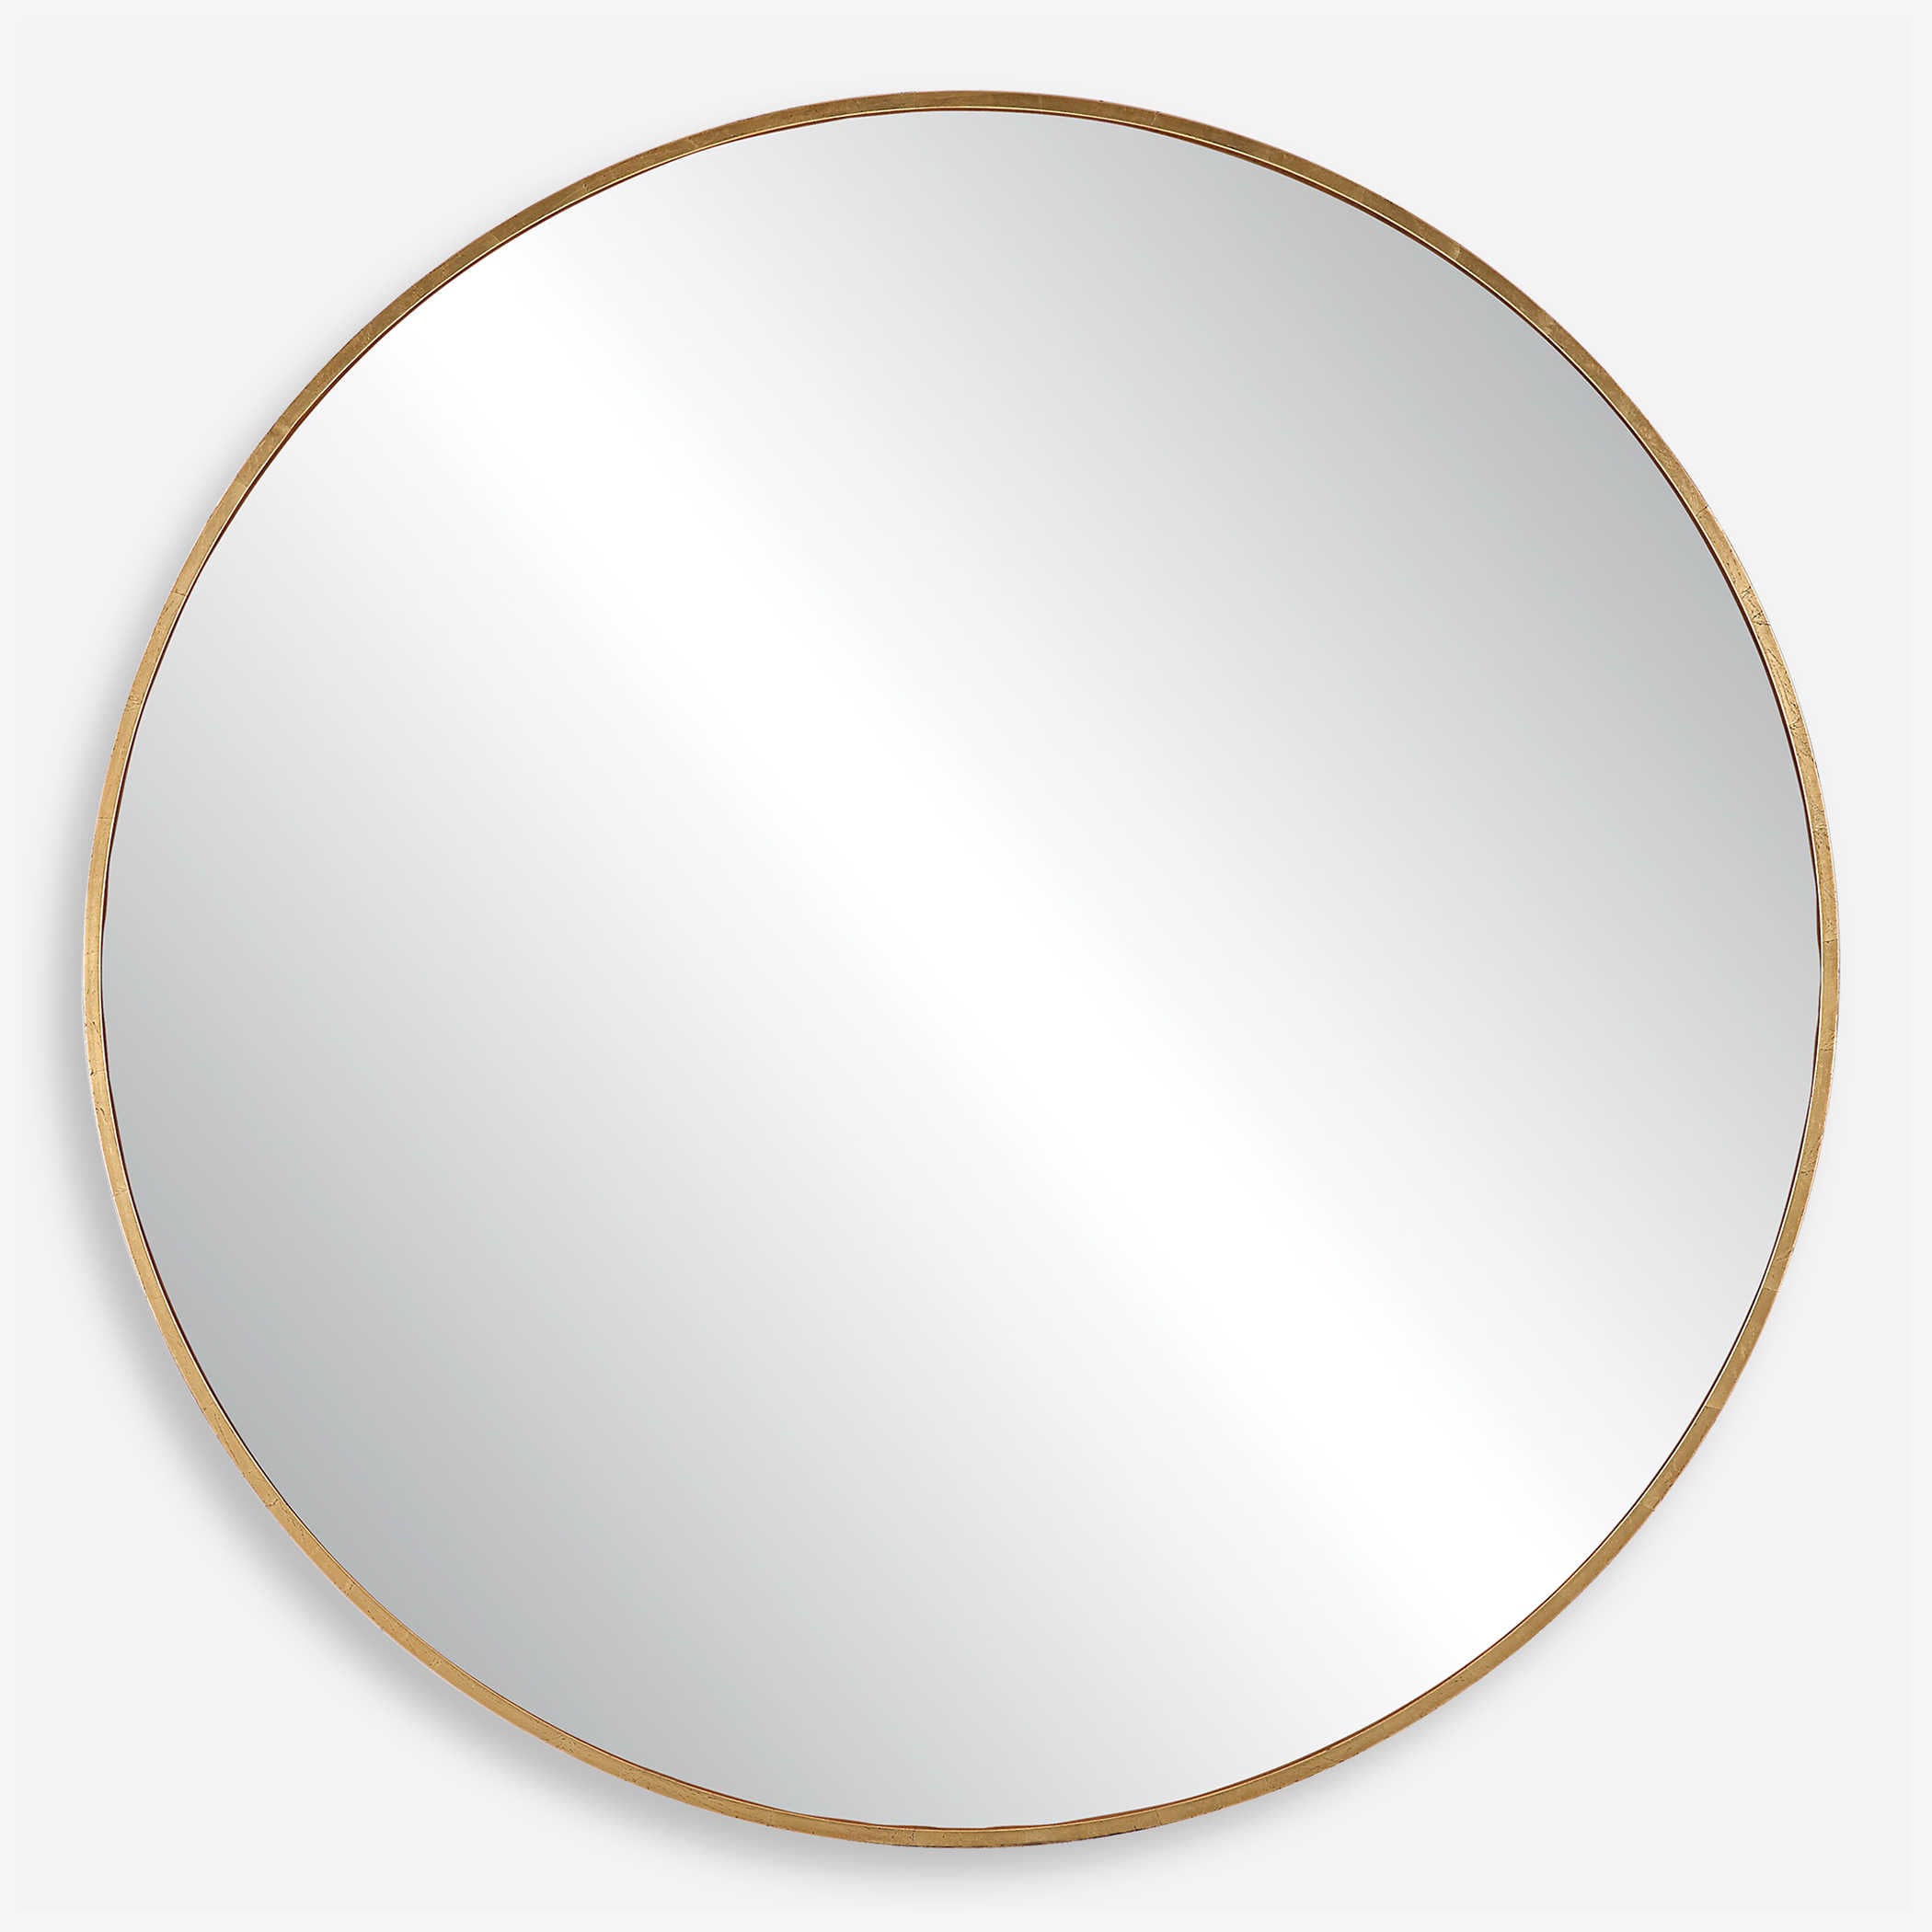 Junius Round Mirror - Antique Gold or Rustic Black